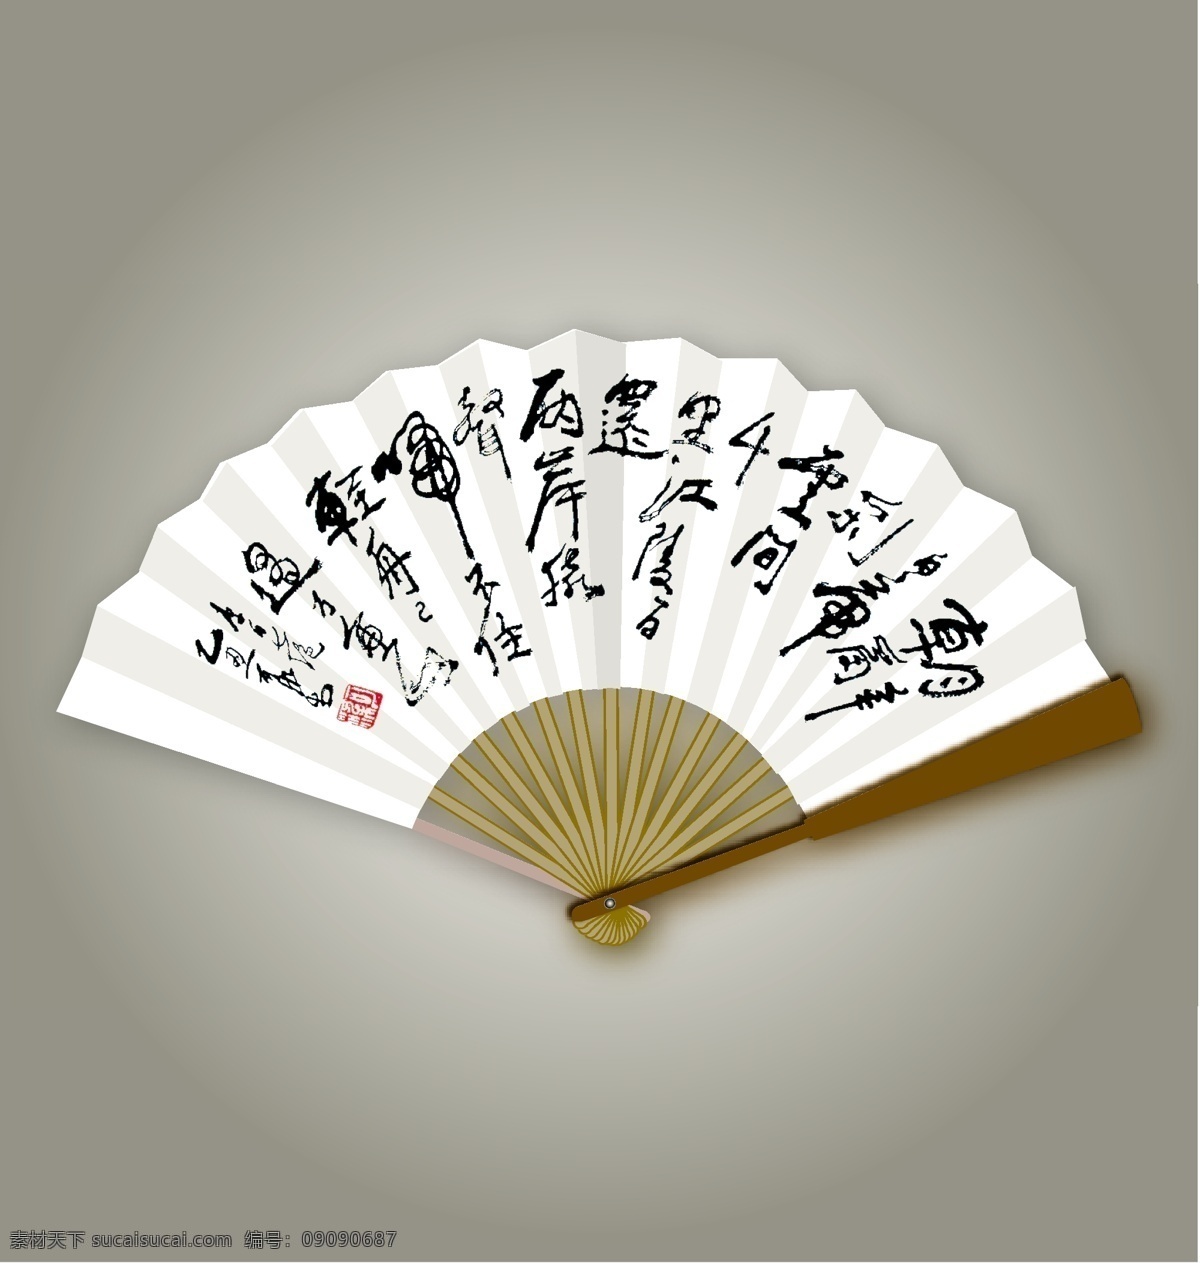 中国字画 矢量免费下载 传统文化 矢量图 扇子矢量素材 图 文化艺术 矢量 字画 其他矢量图